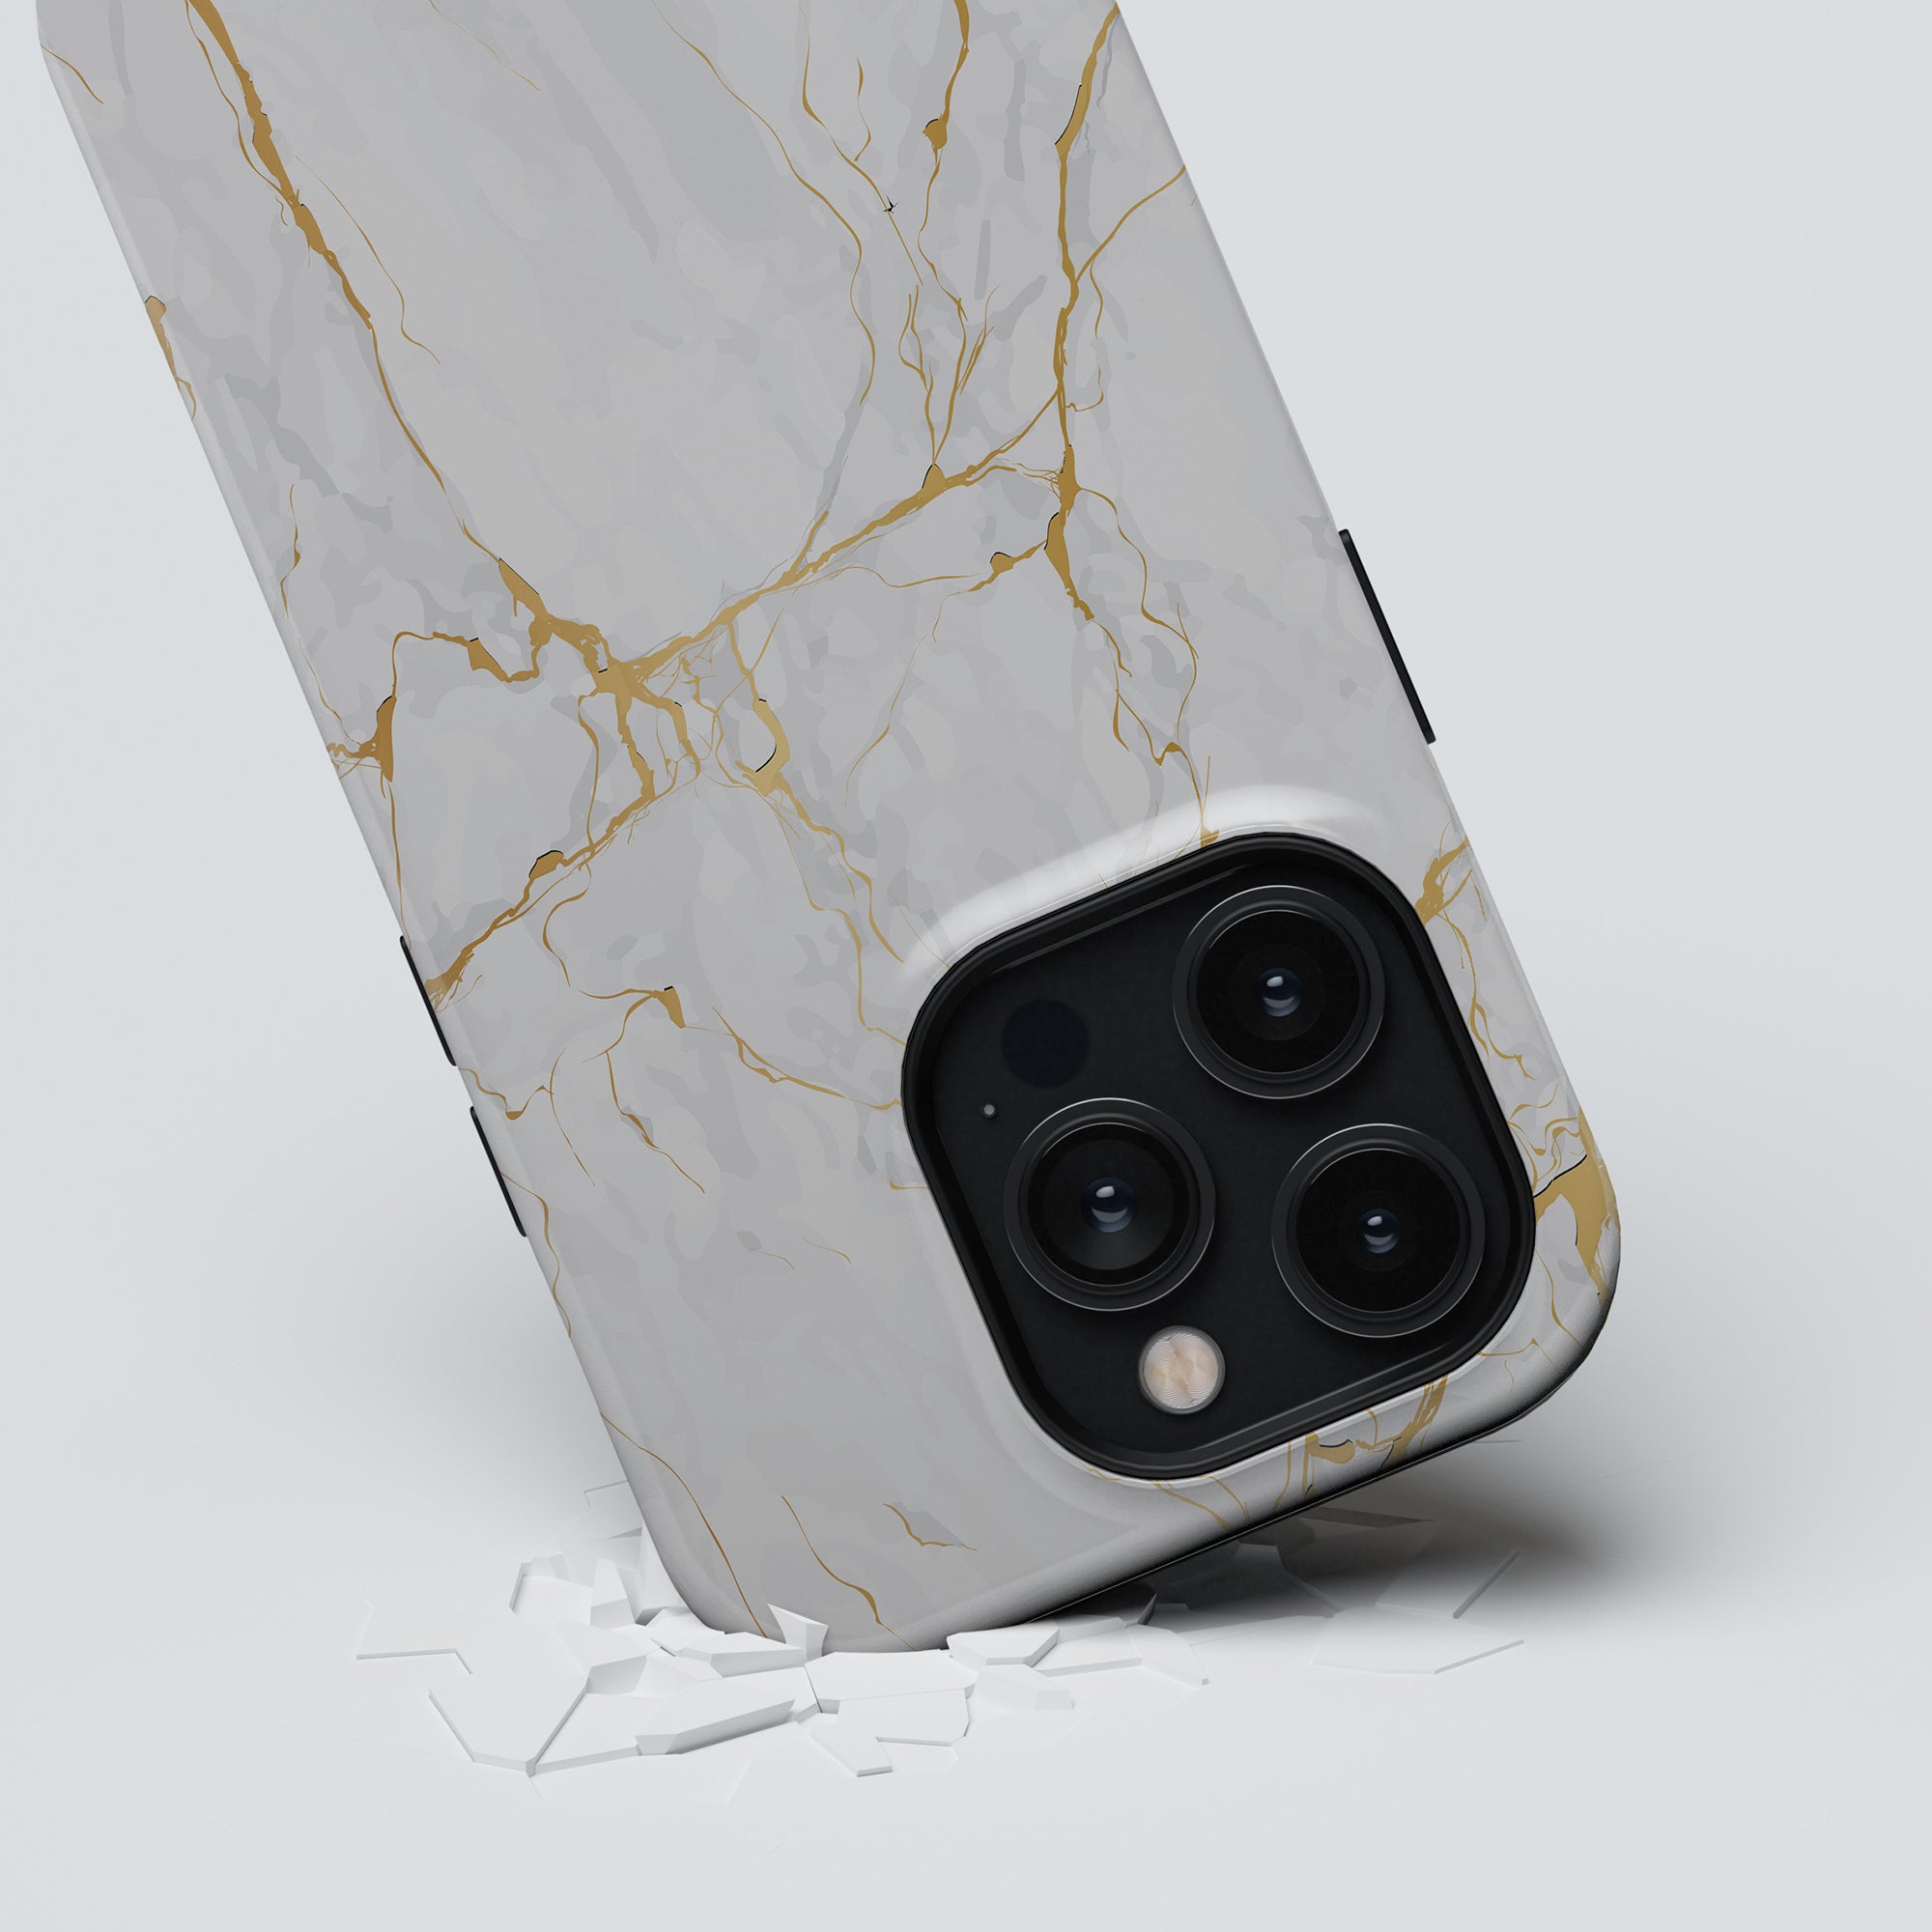 Detta fantastiska Calacatta Gold - Tough Case är designat speciellt för iPhone 11 Pro. Dess vita och guldfärgade färgschema utstrålar elegans, medan dess tuffa fodral ger ultimat skydd.